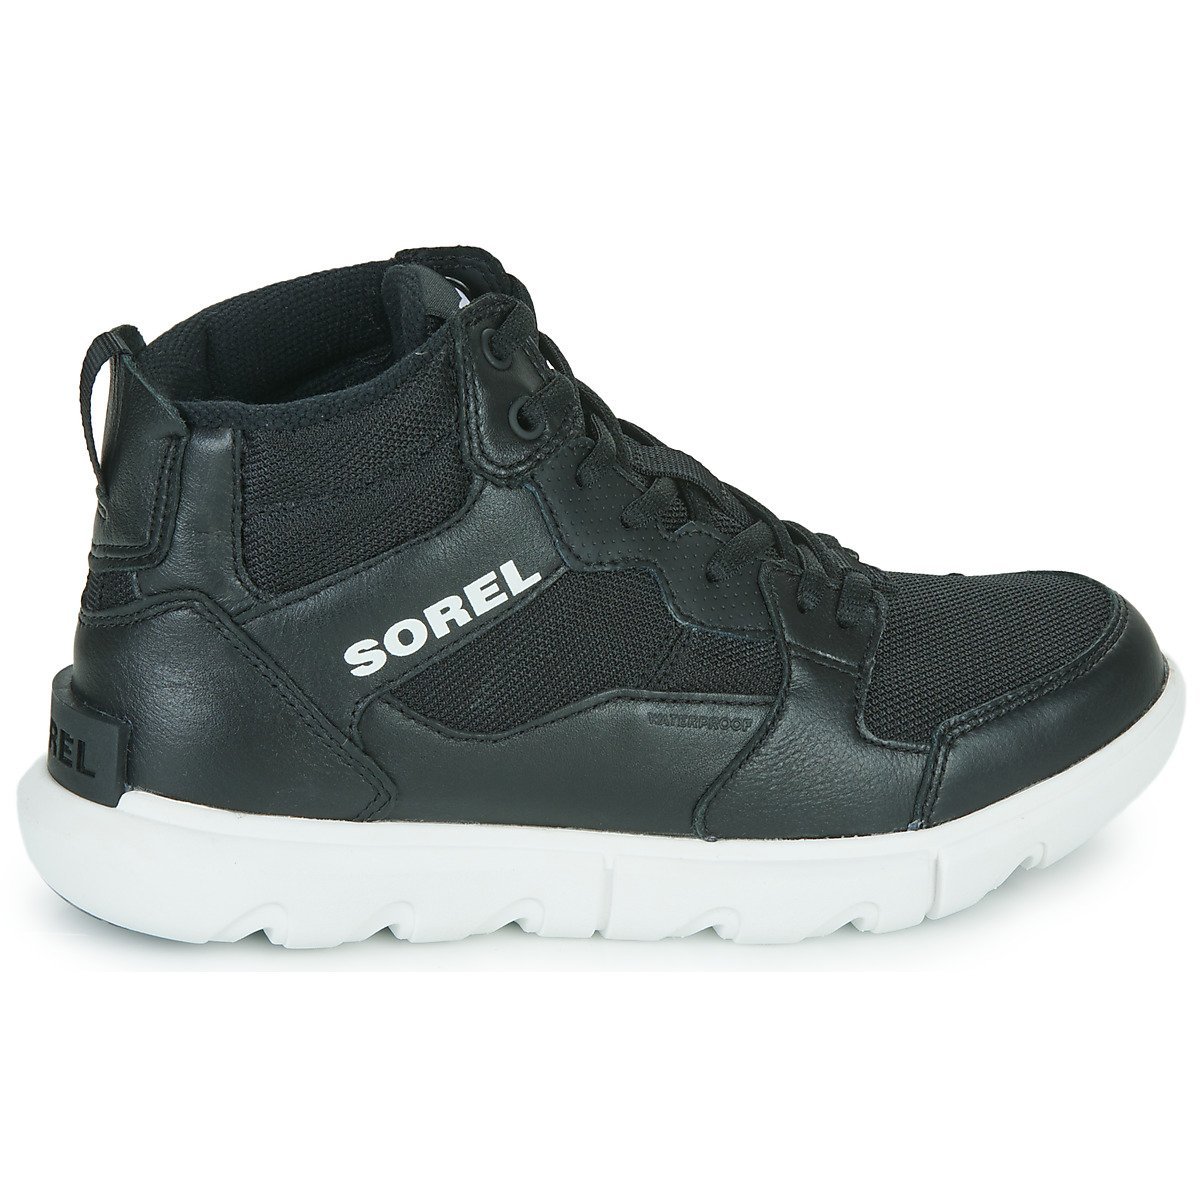 Obuv Sorel Explorer™ II Sneaker Mid WP W - čierna/biela